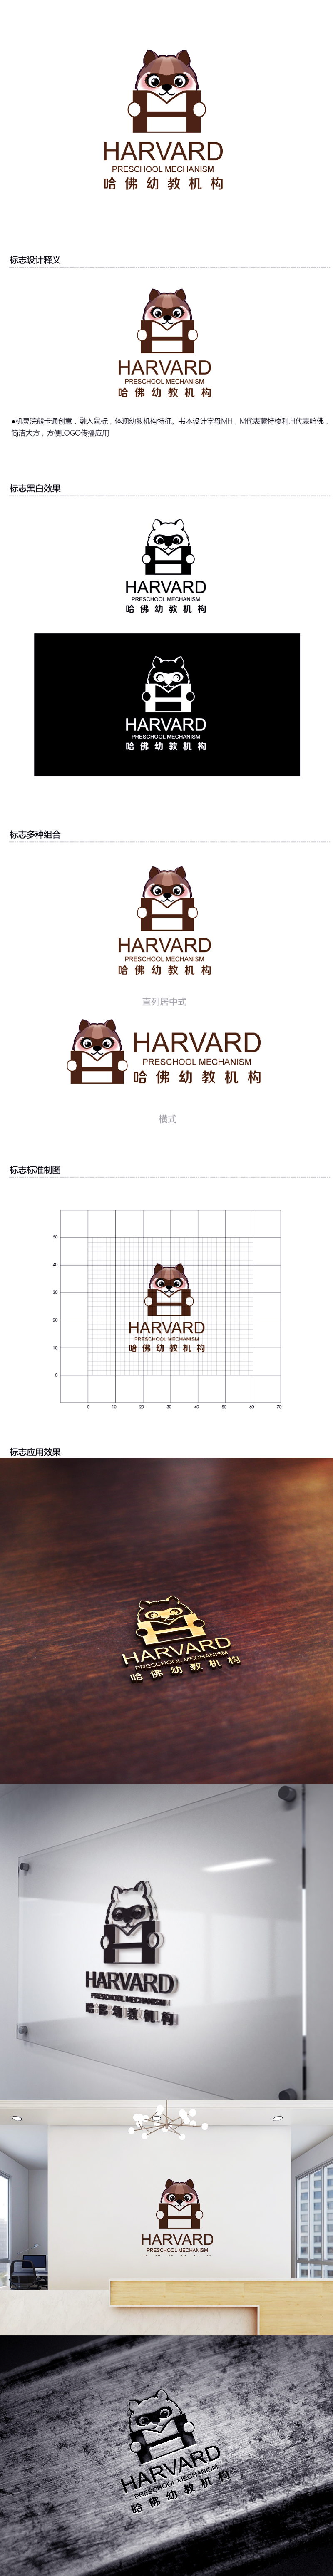 黄安悦的哈佛幼教机构logo设计